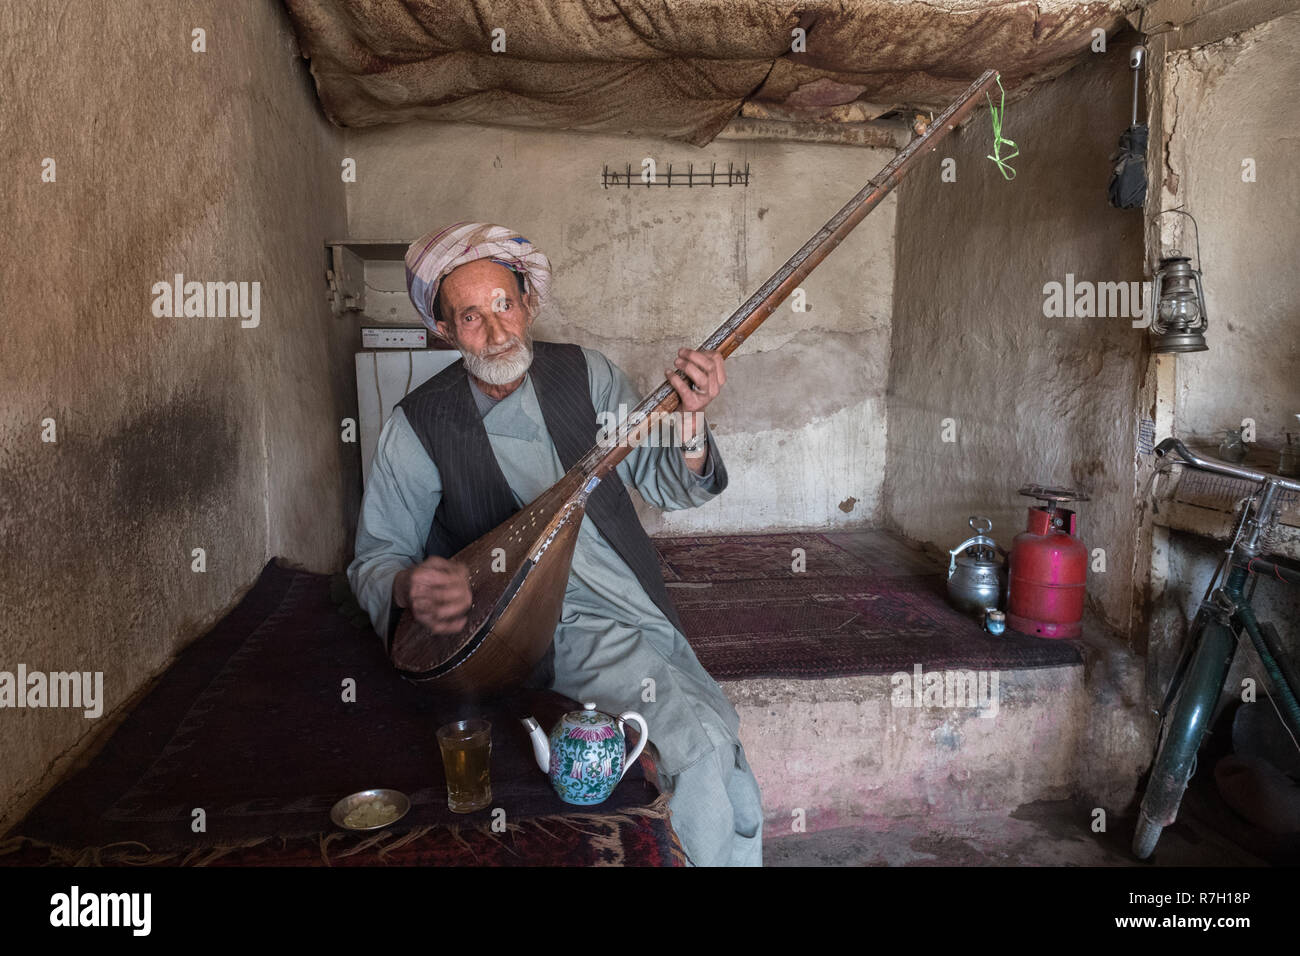 Vieil homme jouant rabab, l'instrument de musique nationaux afghans, dans une ancienne maison de thé vieux bazar, Herat, province de Herat, Afghanistan Banque D'Images